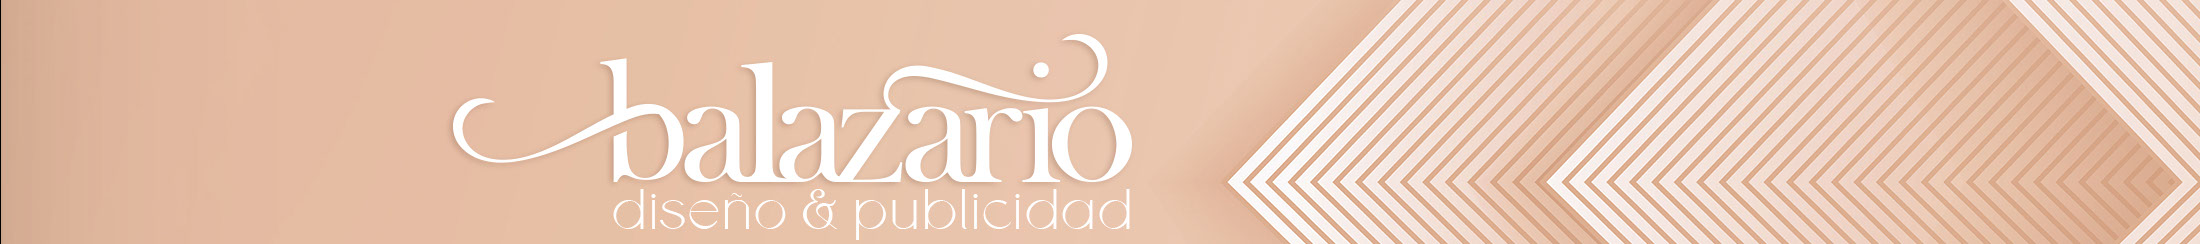 Mariana Balanzario's profile banner